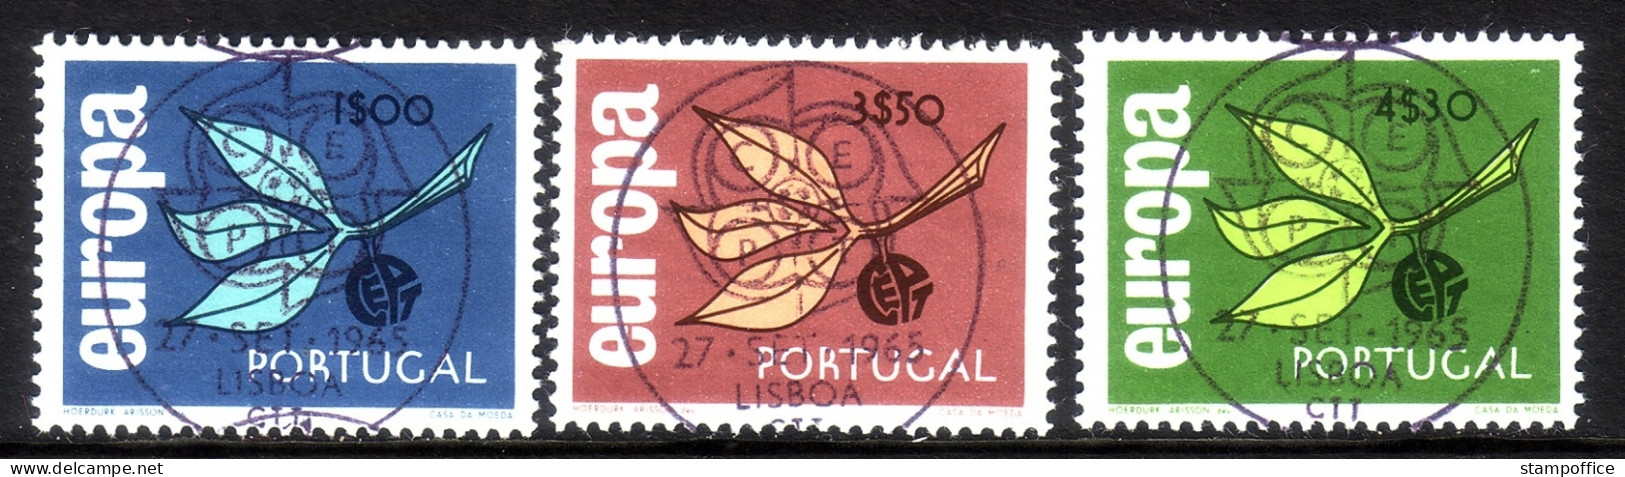 PORTUGAL MI-NR. 990-992 O (VOLLSTEMPEL) EUROPA 1965 ZWEIG - Usati